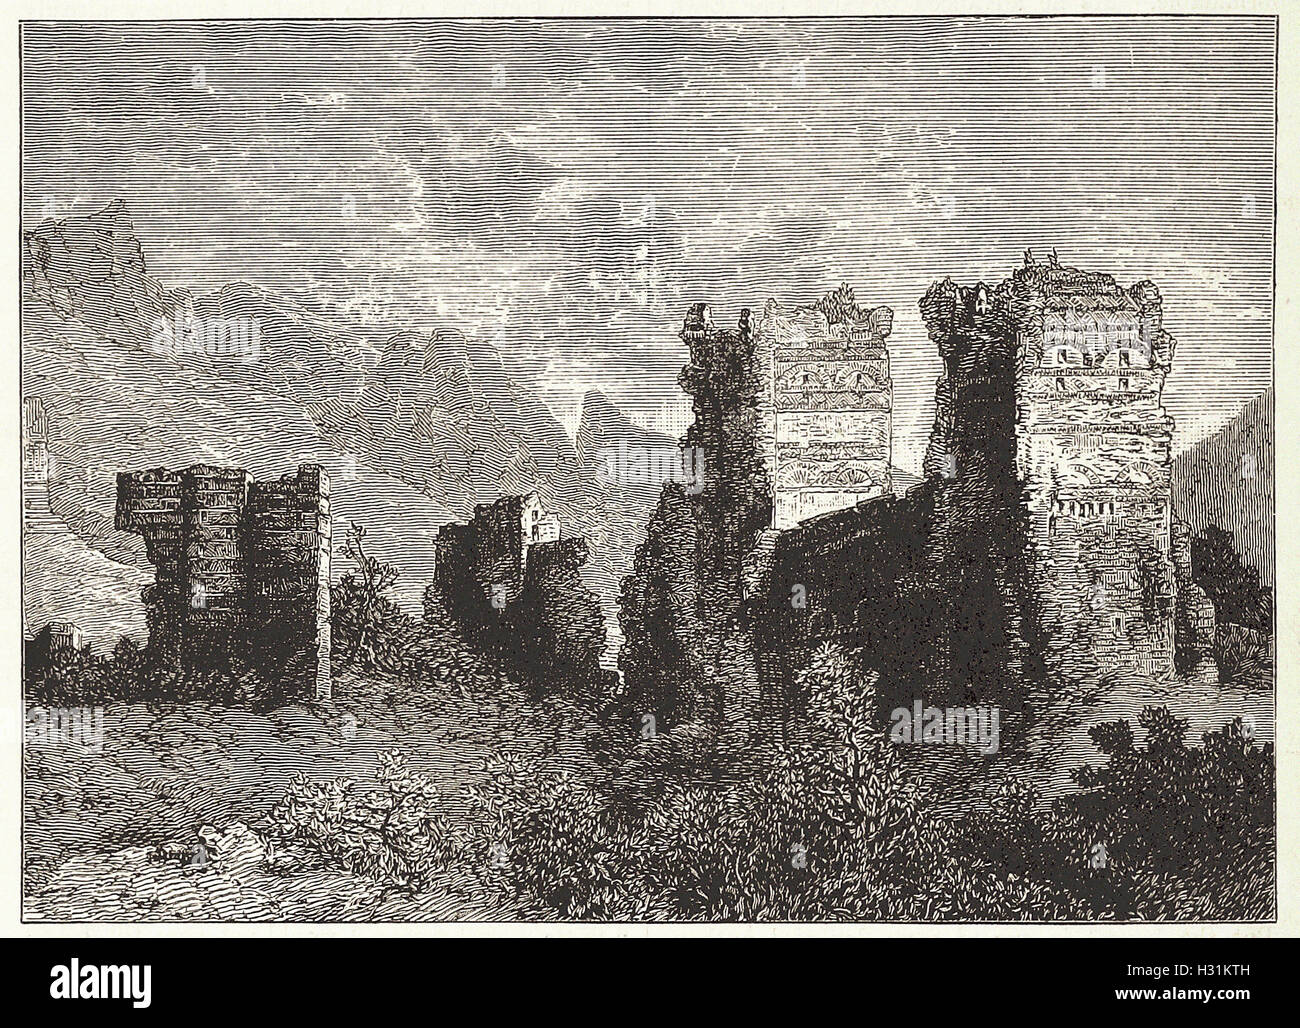 Ruinas de las antiguas murallas de la ciudad, Antioquía, desde 'Cassell's ilustra la historia universal' - 1882 Foto de stock